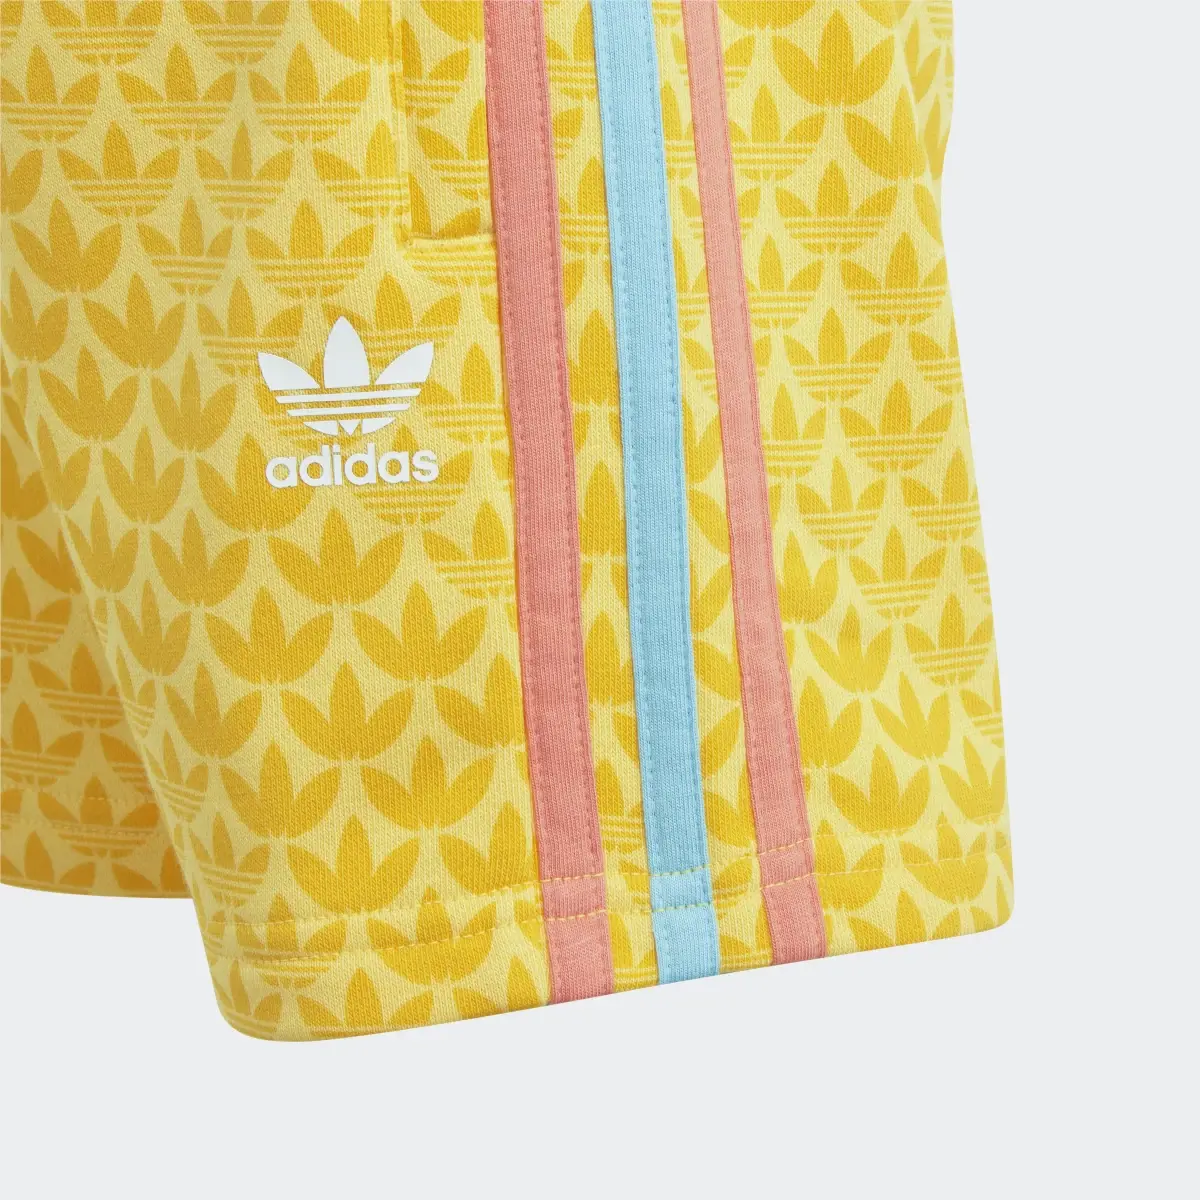 Adidas Graphic Print Shorts and Tee Set. 2